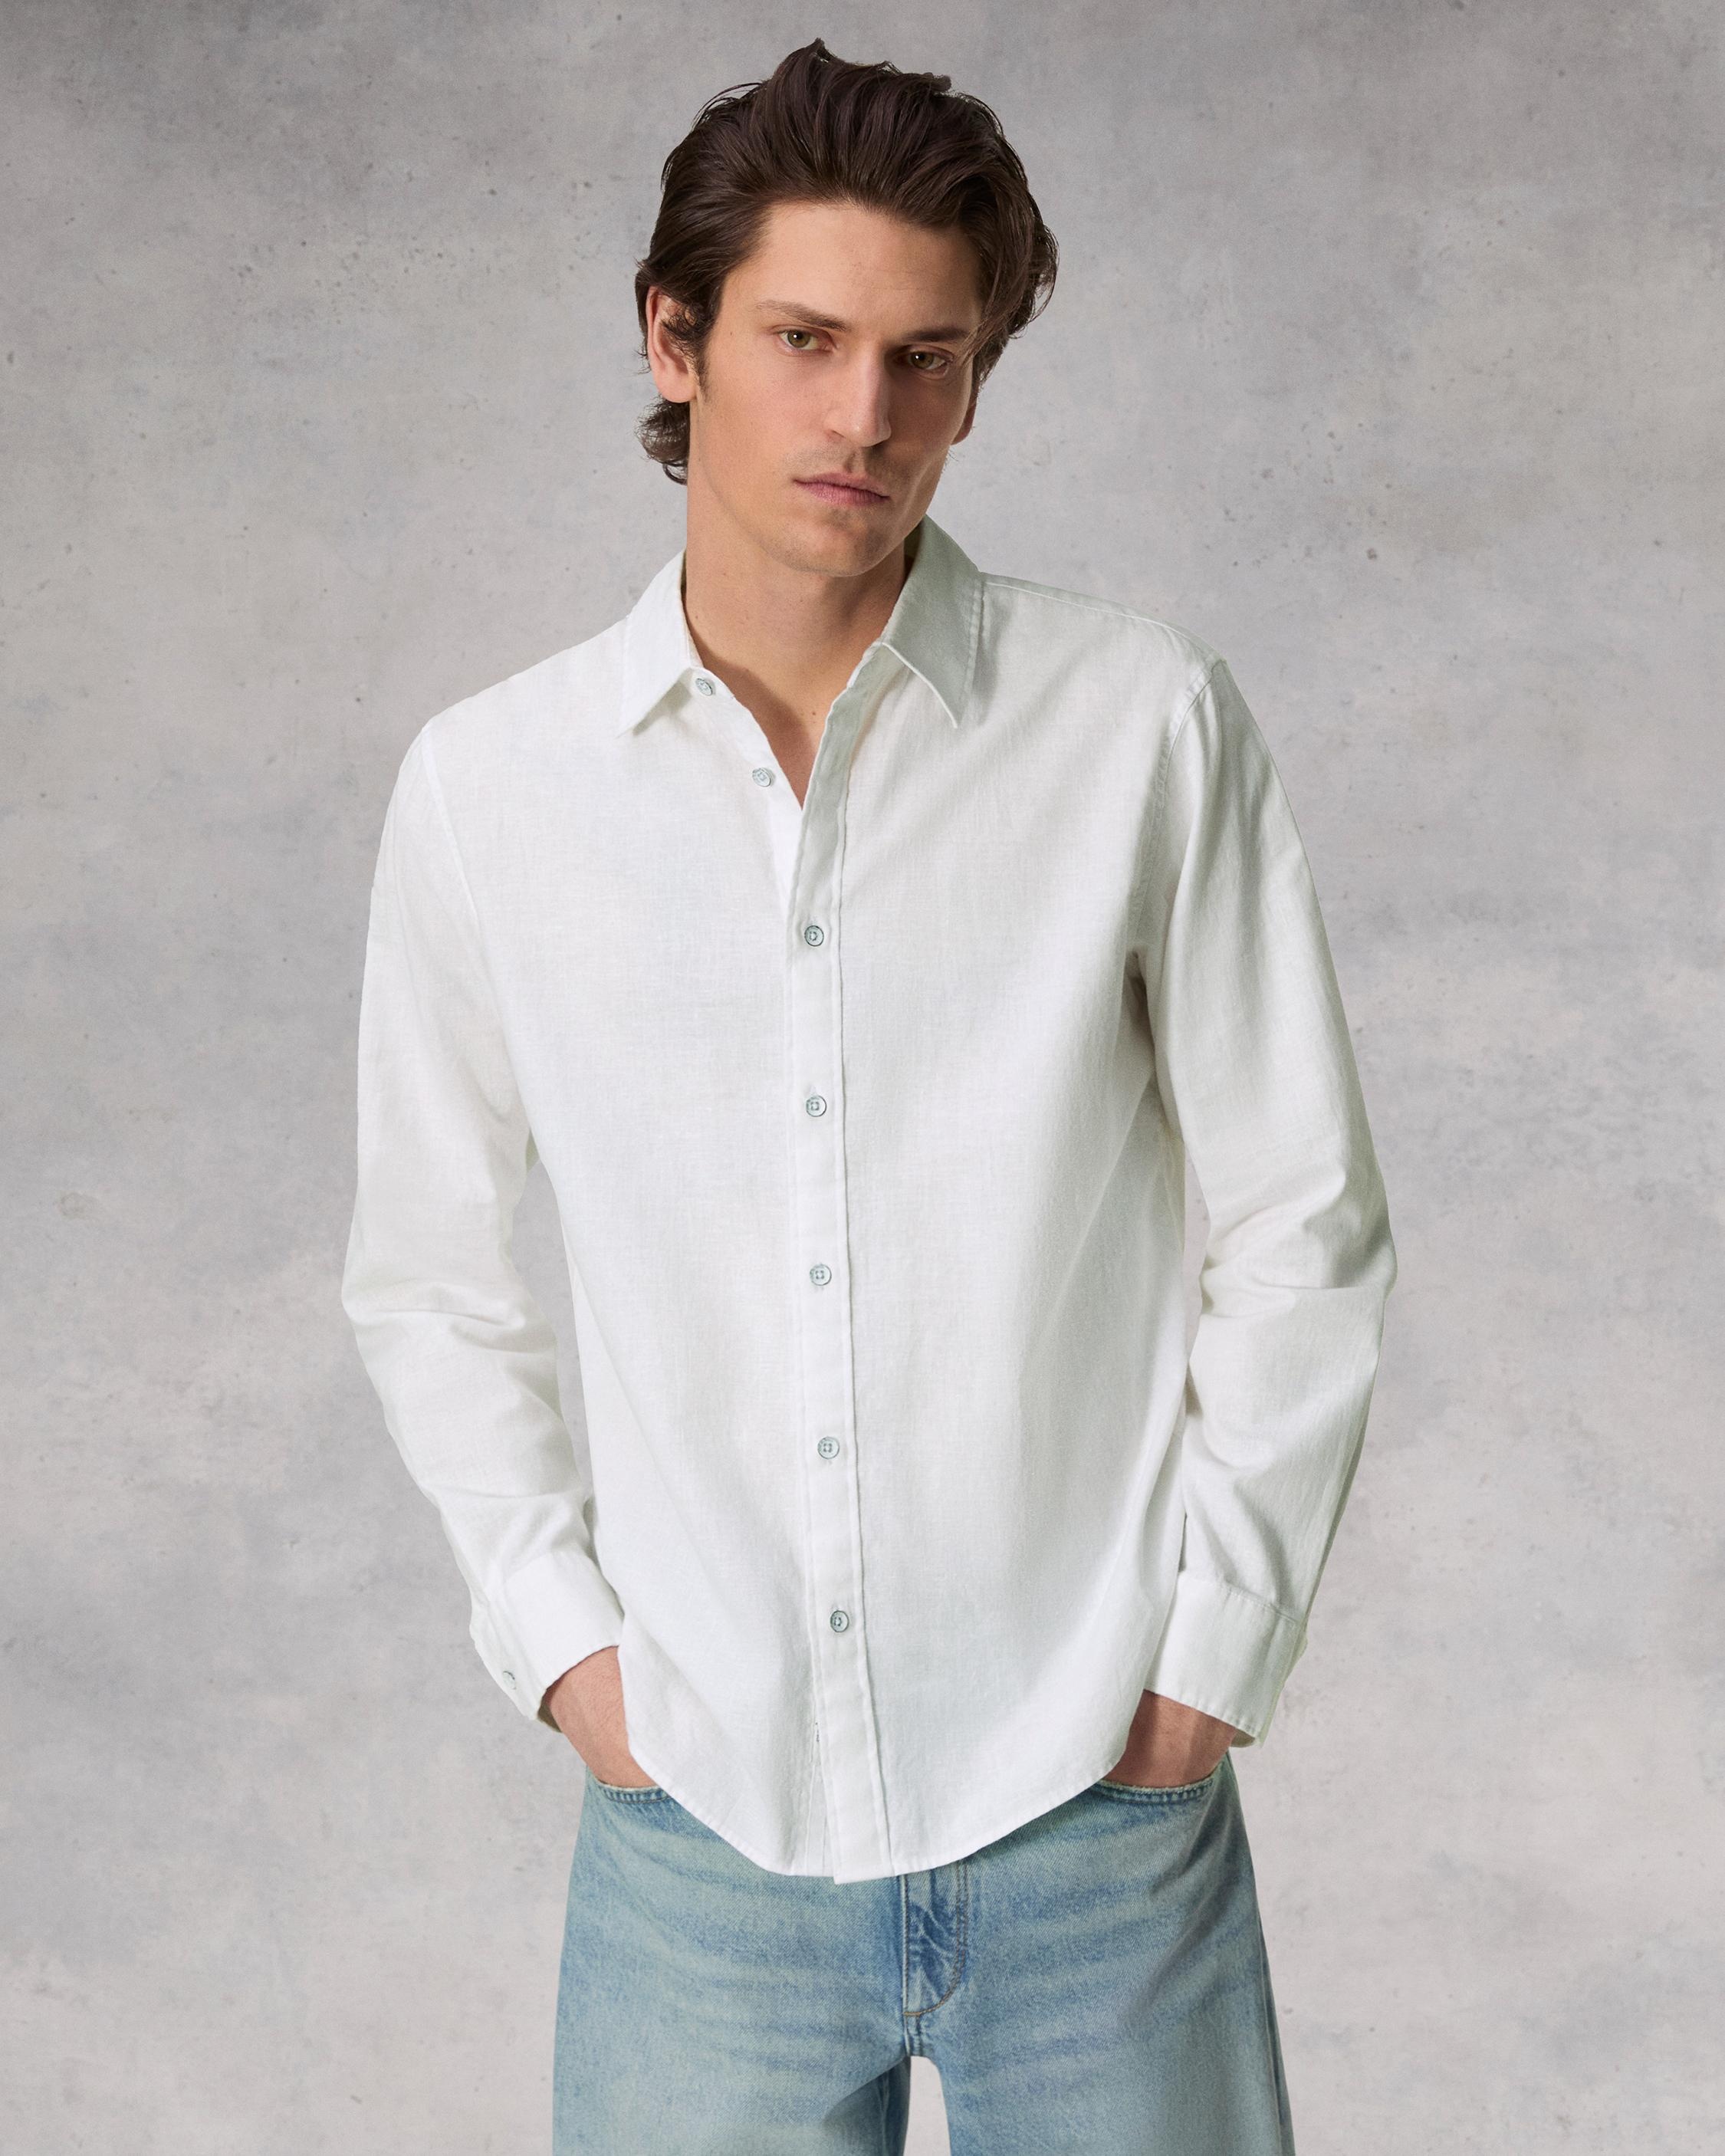 Finch Cotton Hemp Shirt
Relaxed Fit Button Down - 2